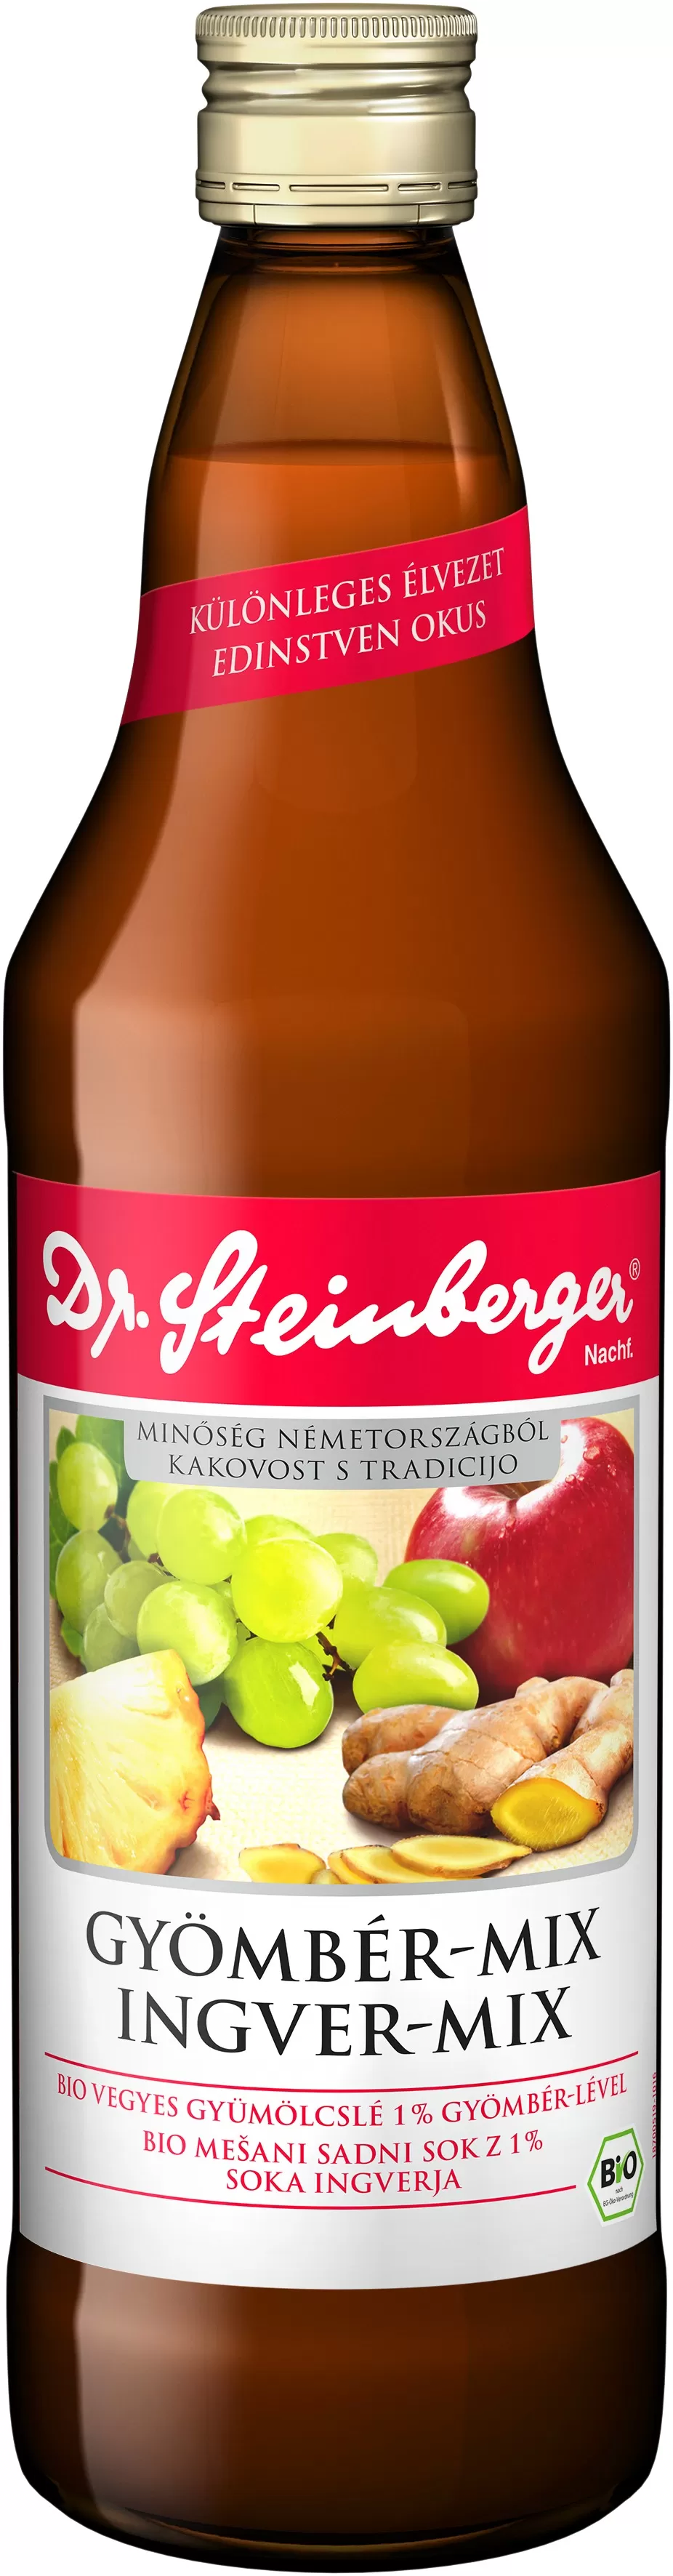 Dr. Steinberger Ingver mix, sok